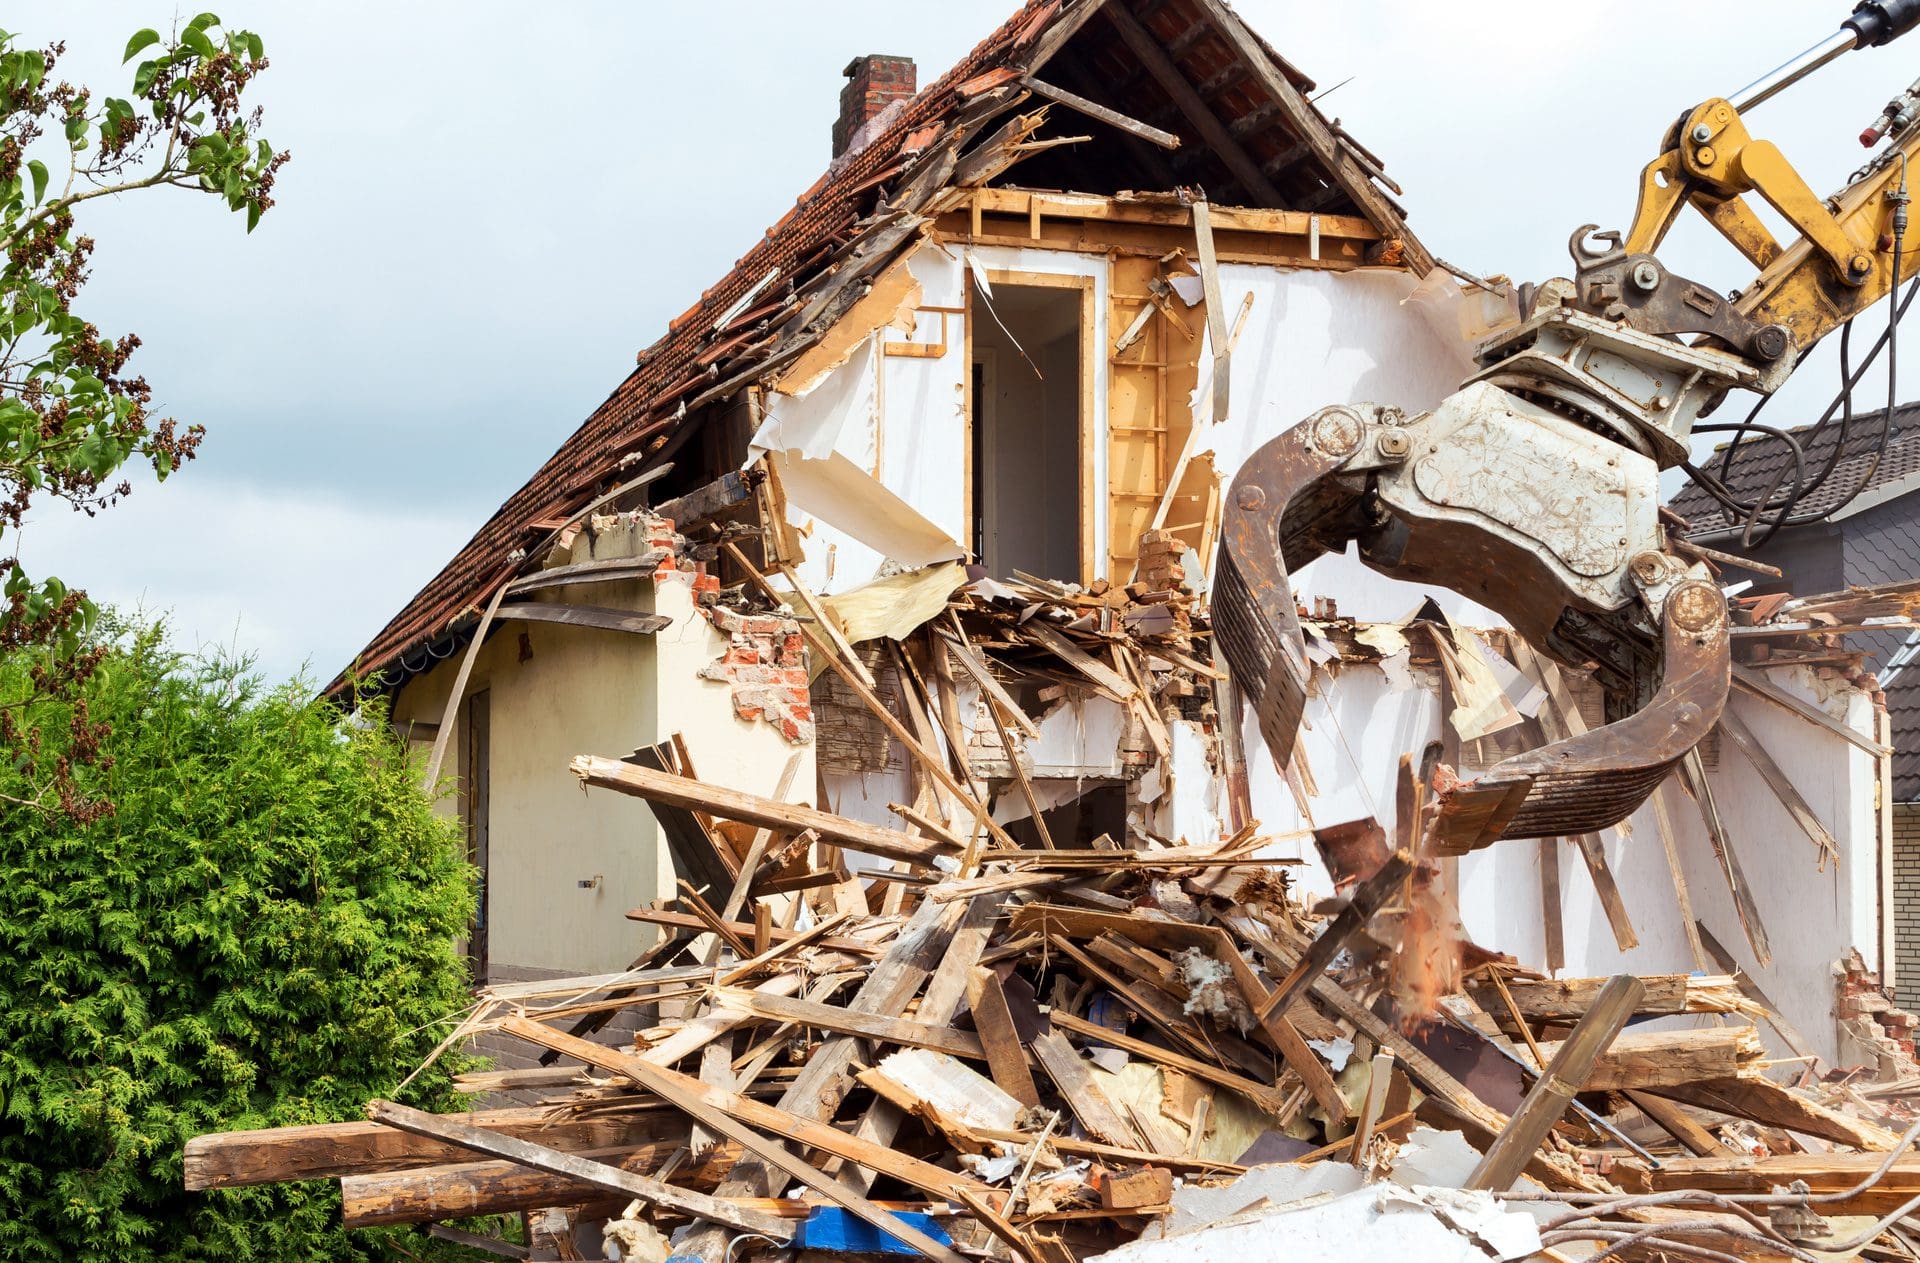 Hausabriss | Abbruch eines Einfamilienhauses nach Großschaden - Übernimmt die Versicherung die Abrisskosten? (© Gabriele Rohde / stock.adobe.com)